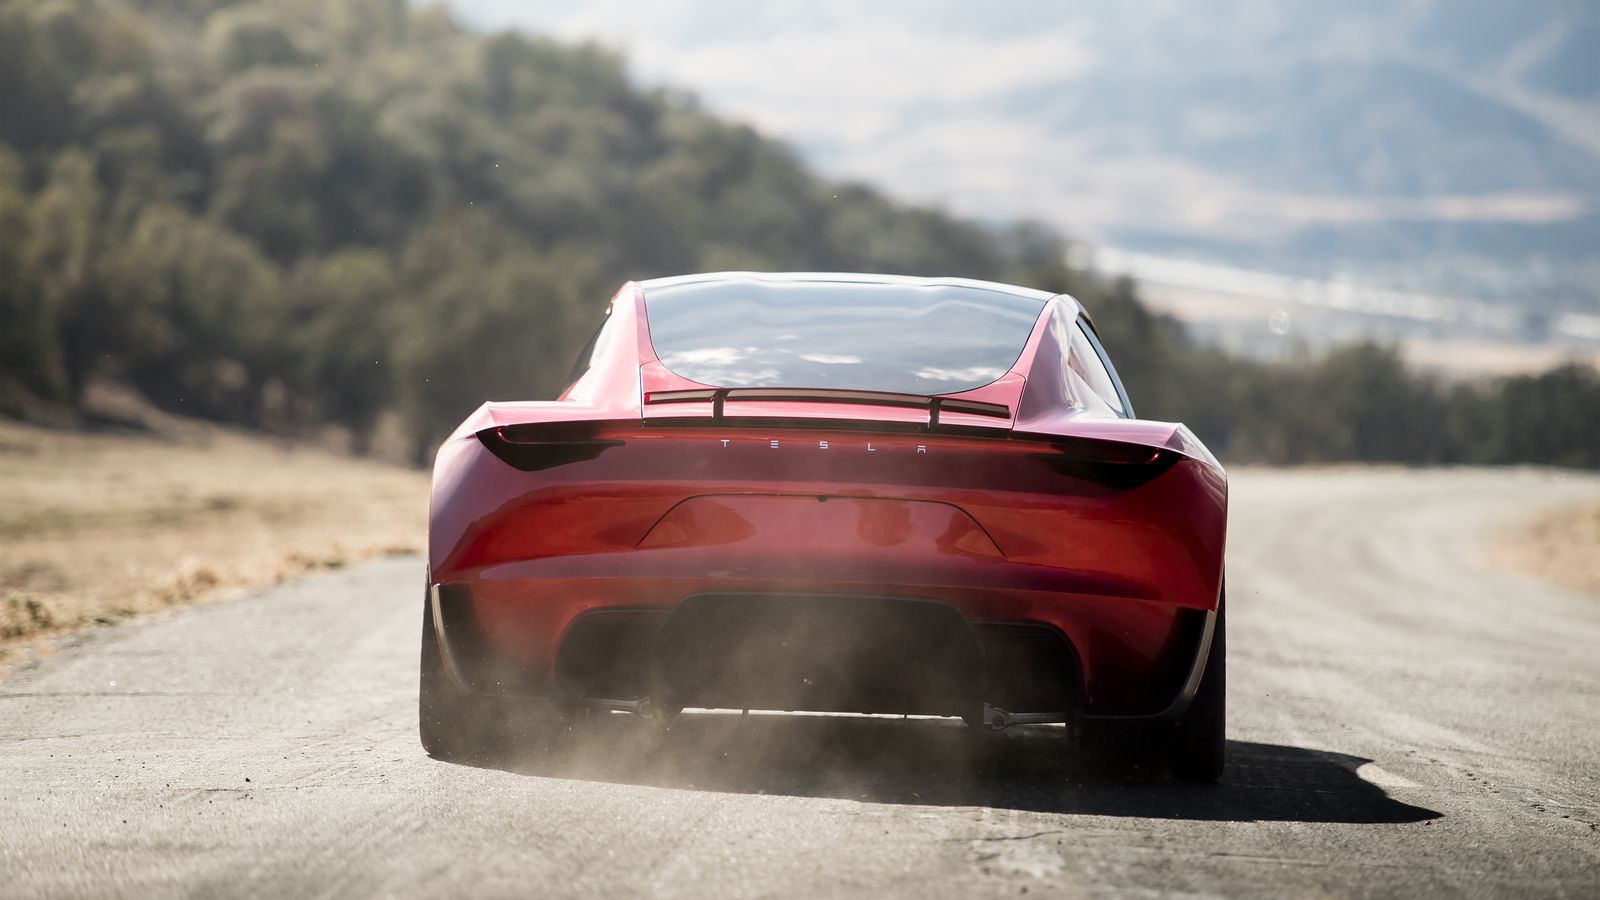 Sans ses réacteurs, le Tesla Roadster accélérera moins vite que